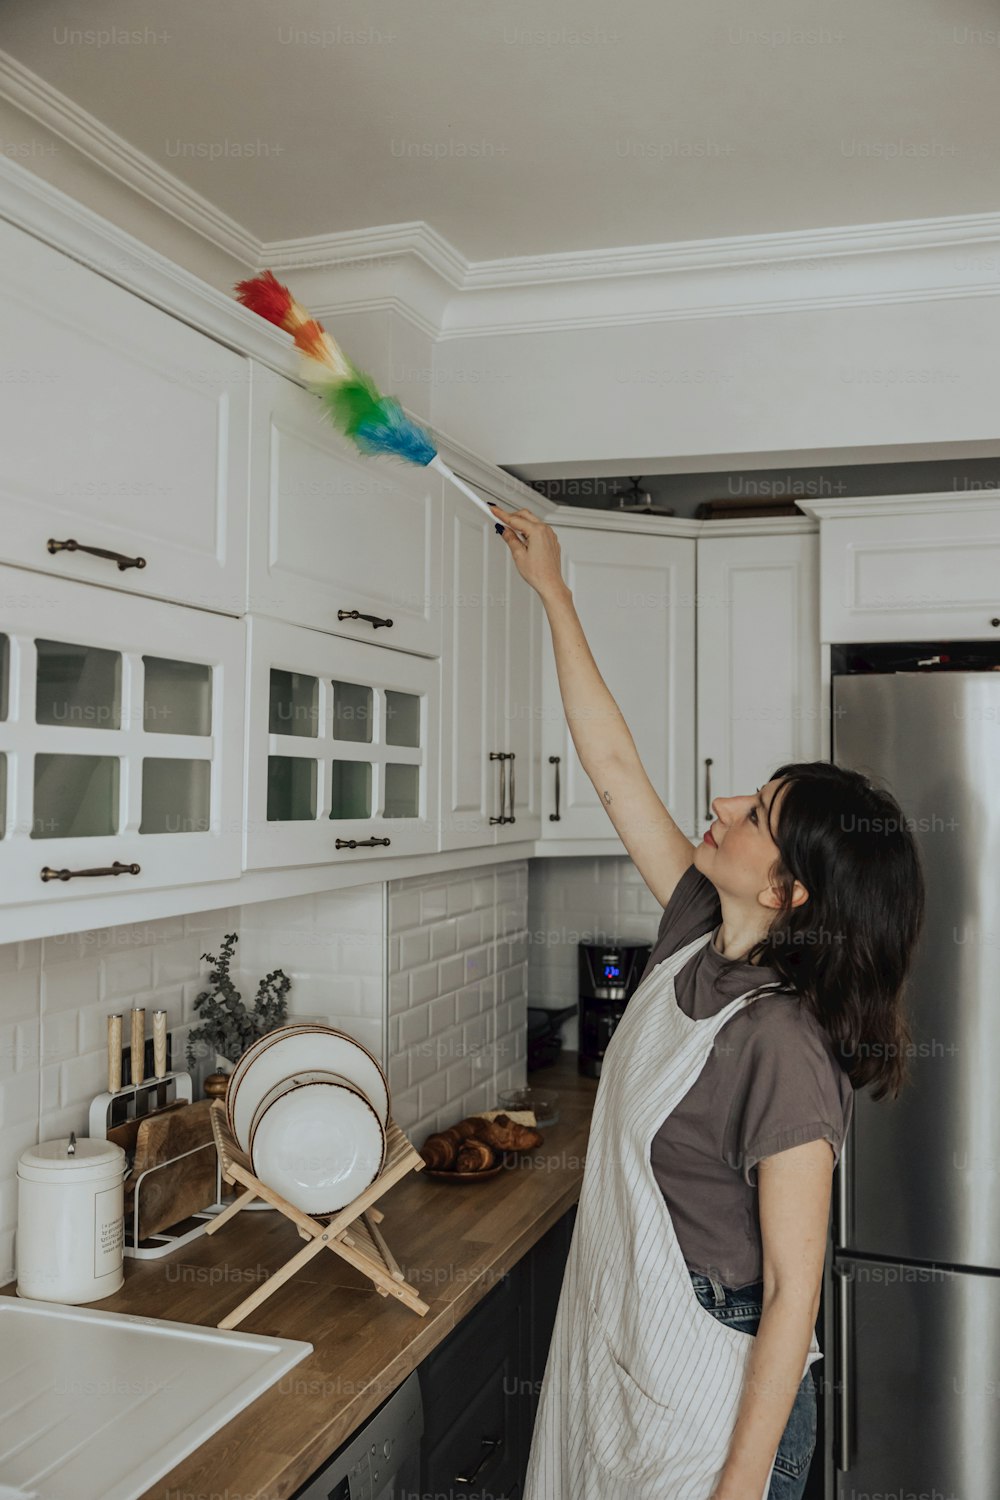 Una mujer limpiando una cocina con un cepillo de colores